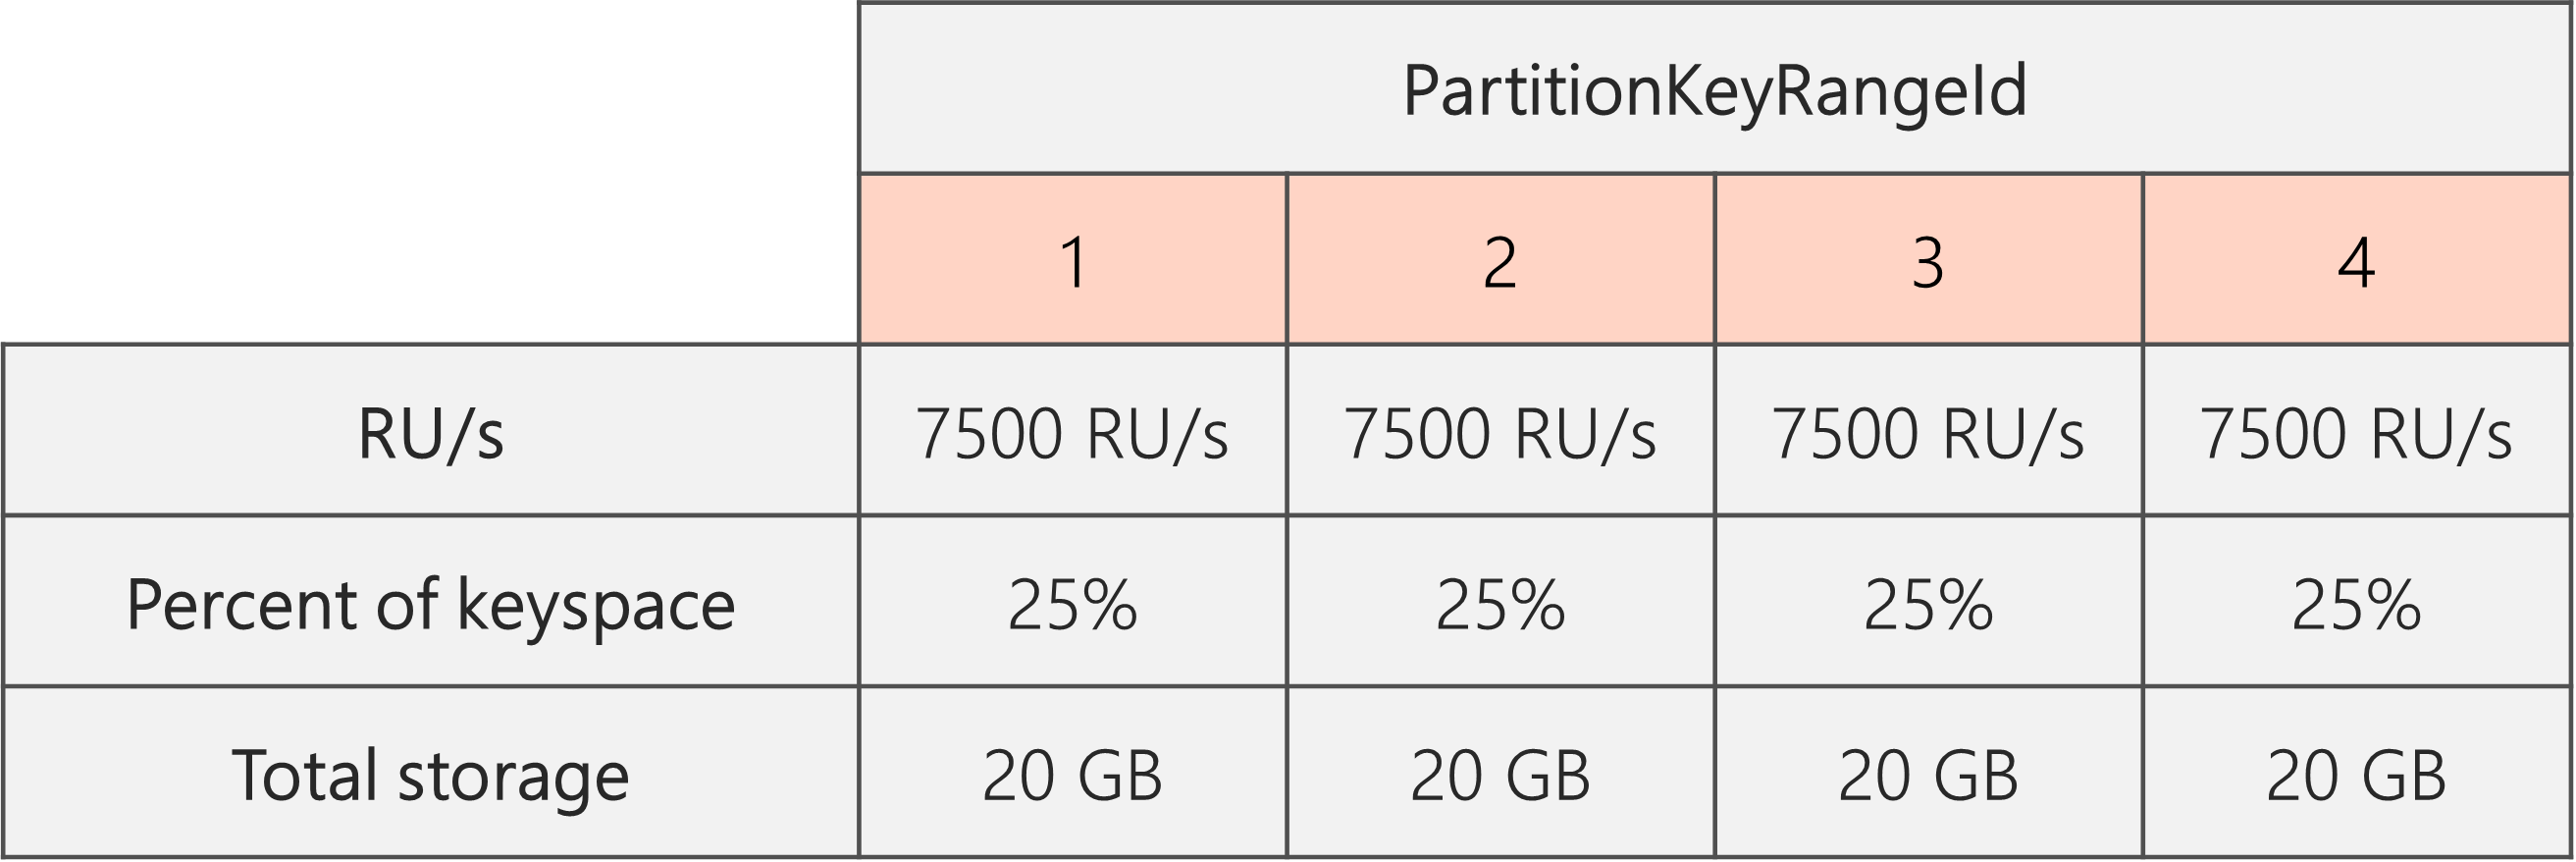 拆分完成且 RU/秒从 40,000 RU/秒降低至 30,000 RU/秒后，有 4 个 PartitionKeyRangeId，每个 PartitionKeyRangeId 具有 7500 RU/秒和 25% (20 GB) 的总键空间